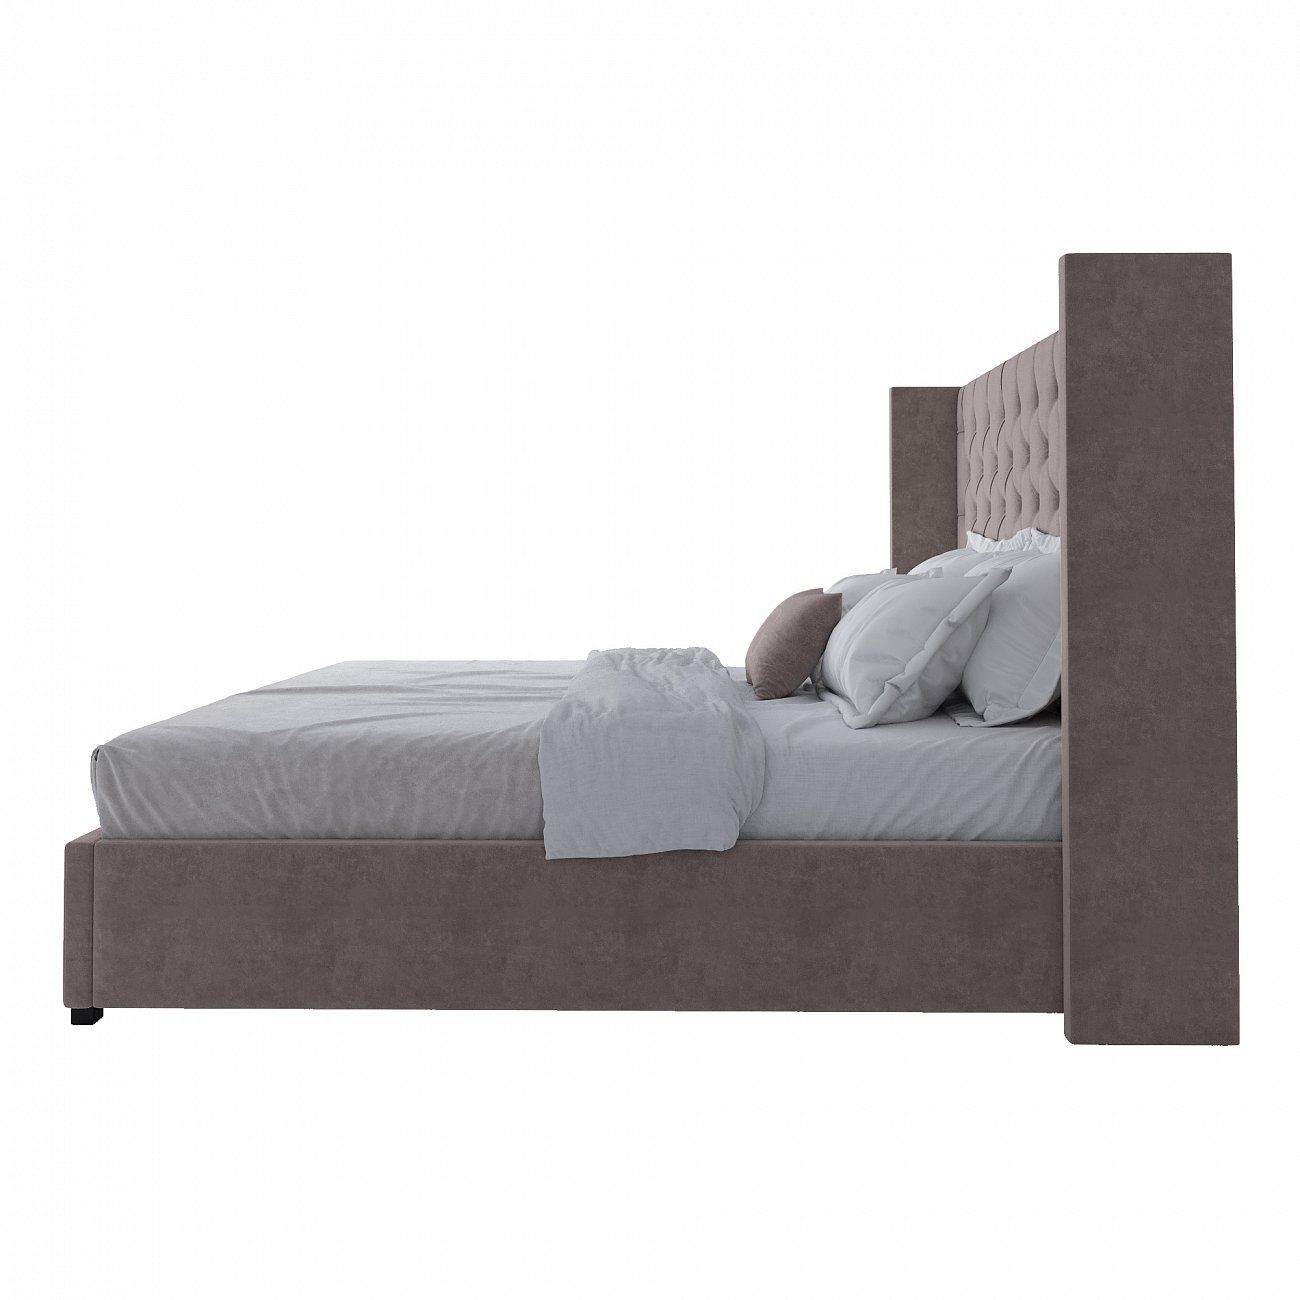 Кровать двуспальная 200х200 см серо-коричневая с каретной стяжкой без гвоздиков Wing-2